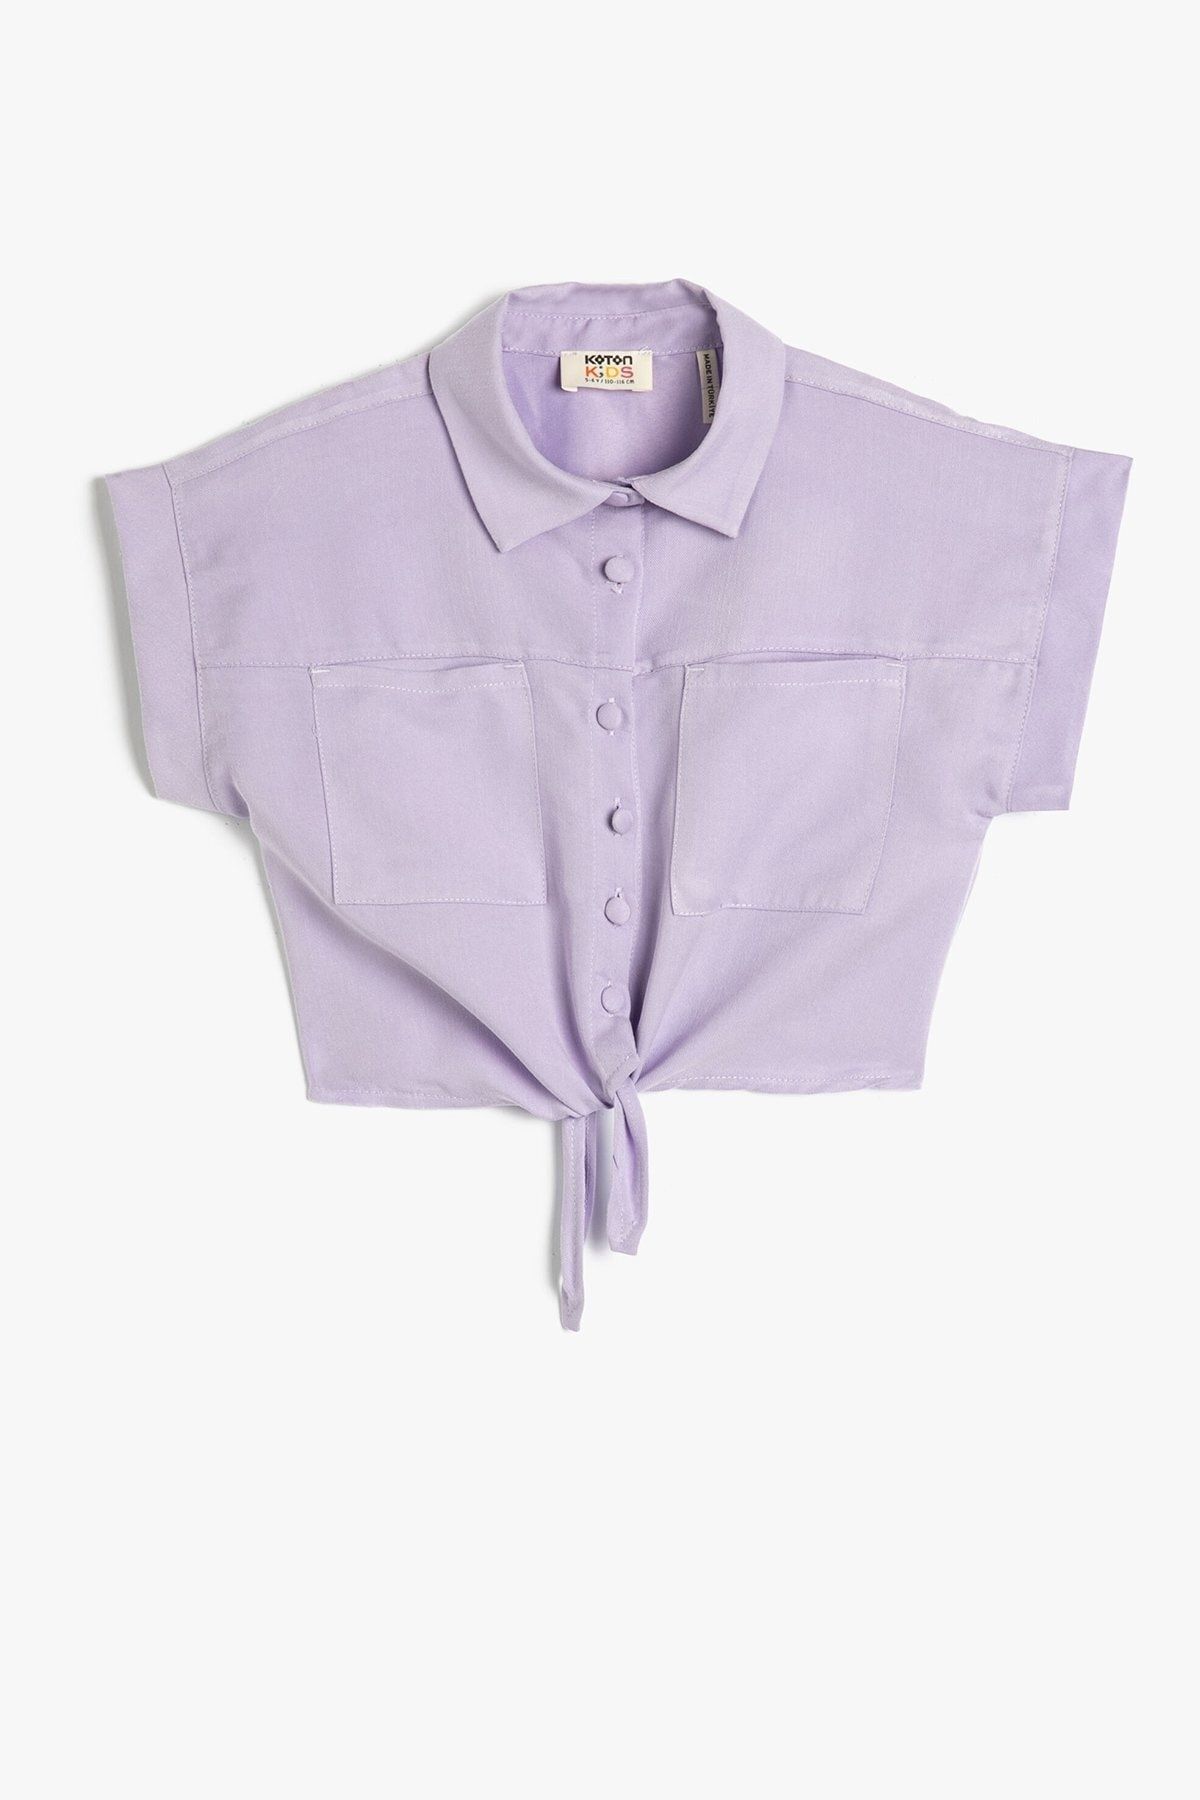 Koton Kız Çocuk Önden Bağlama Detaylı Kısa Kollu Cepli Modal Kumaş Crop Gömlek 3skg60160aw